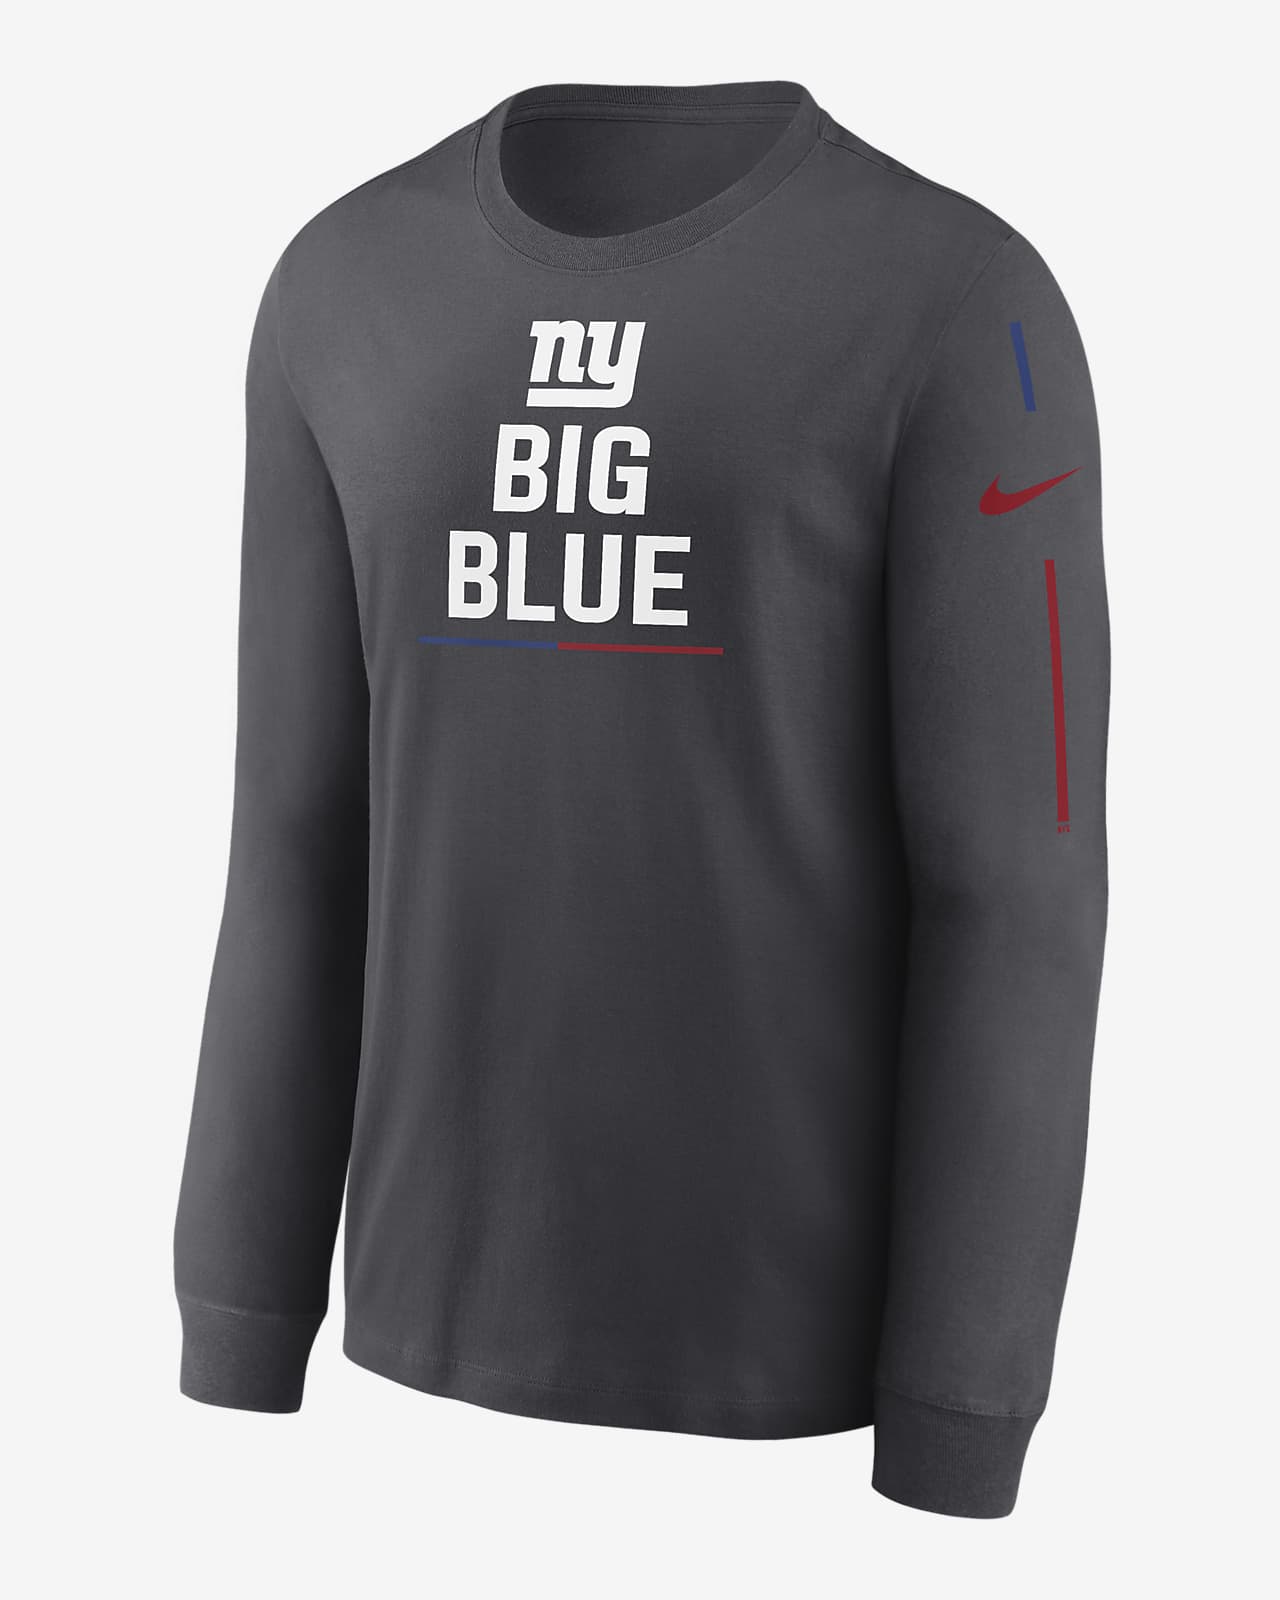 Nike Team Slogan (NFL New York Giants) Men's Long-Sleeve T-Shirt.